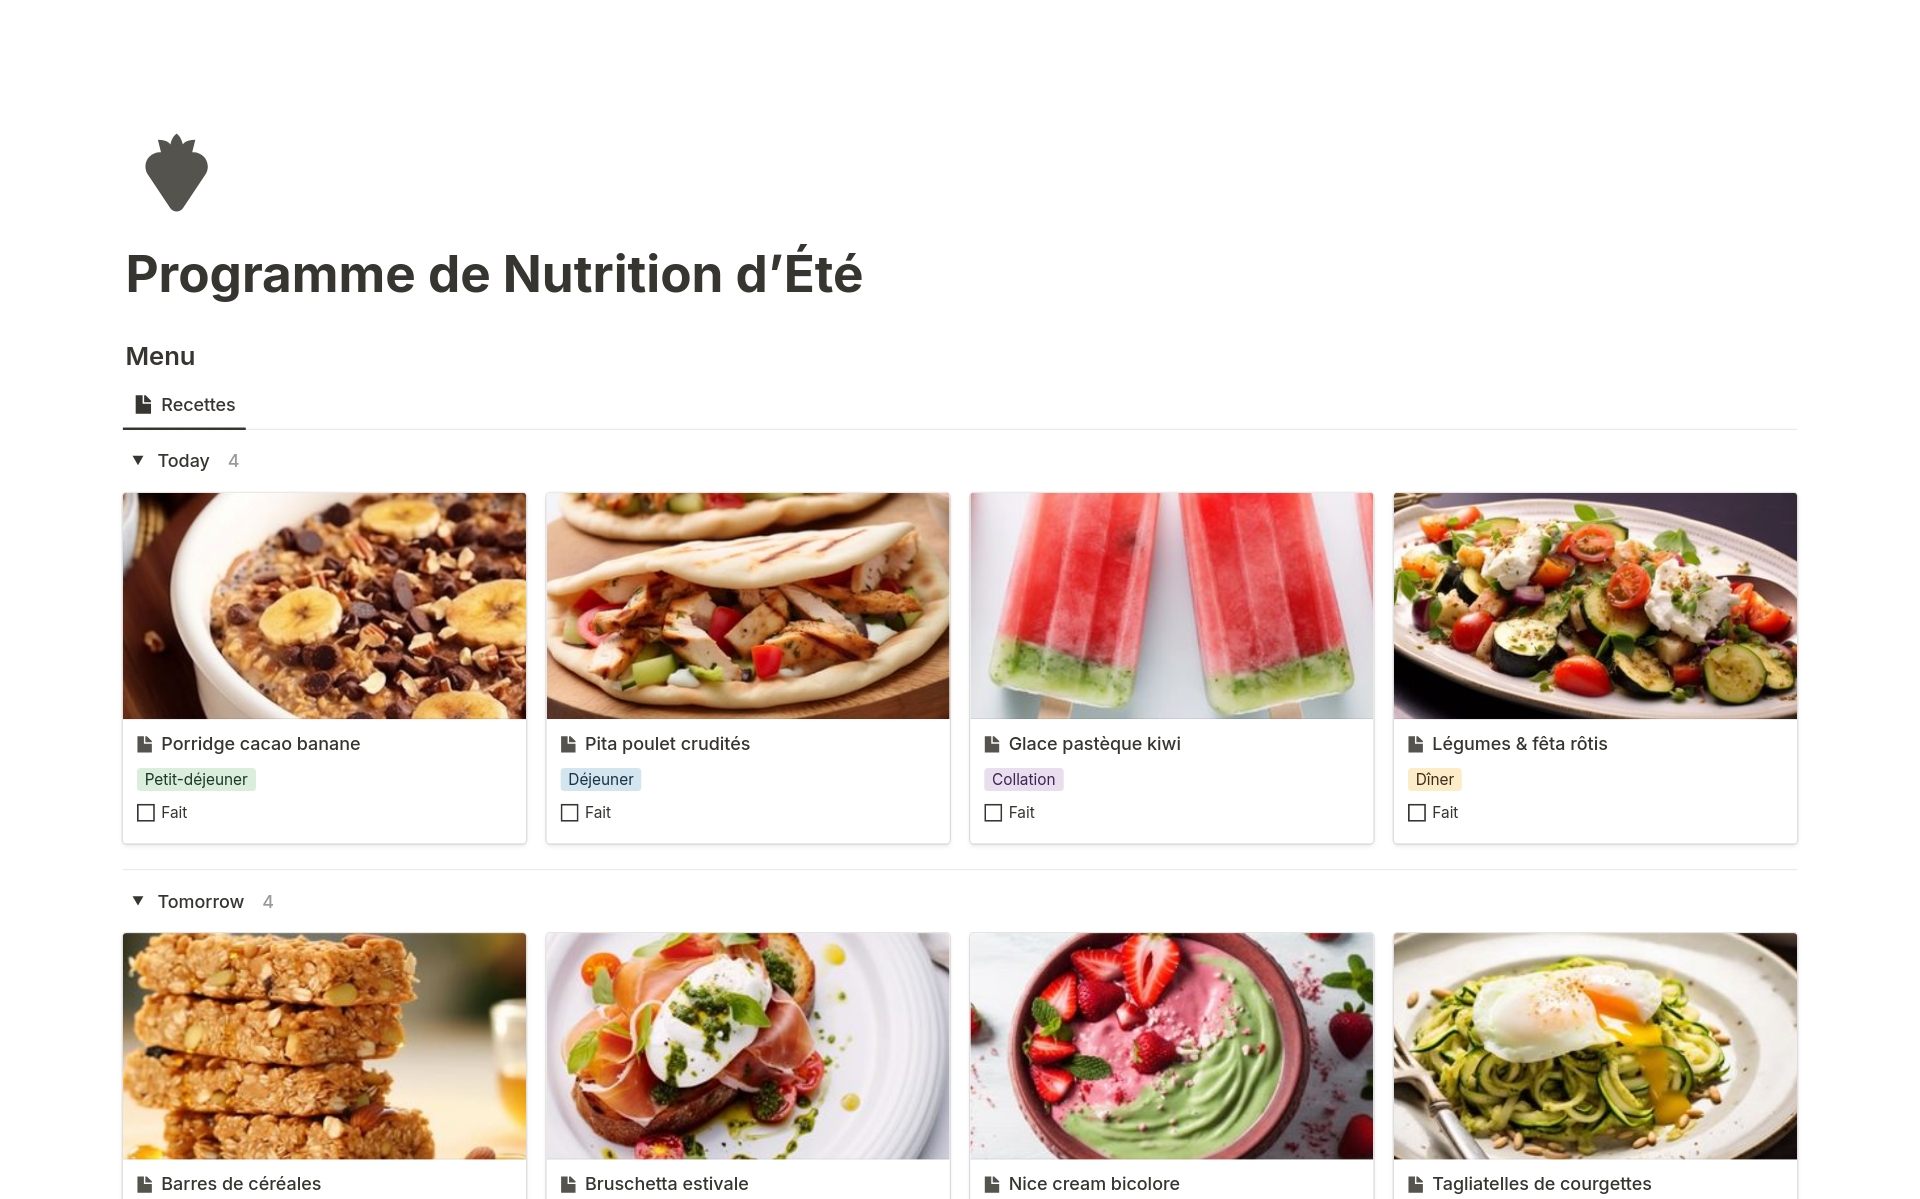 A template preview for Programme de Nutrition d'Été